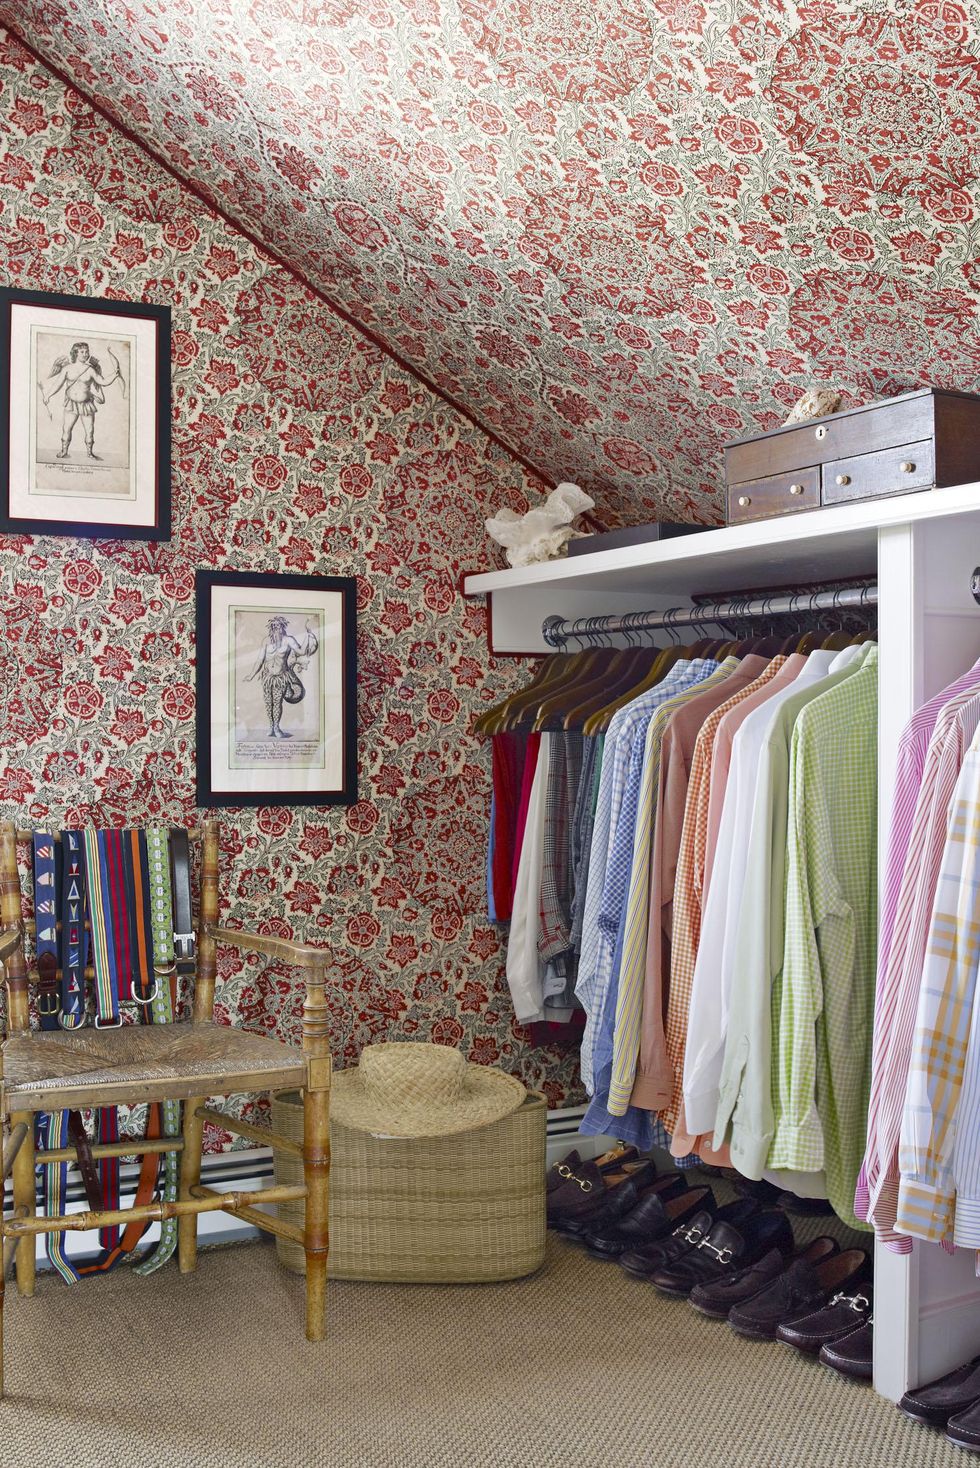 3 Ways to Organize Your Wardrobe - wikiHow